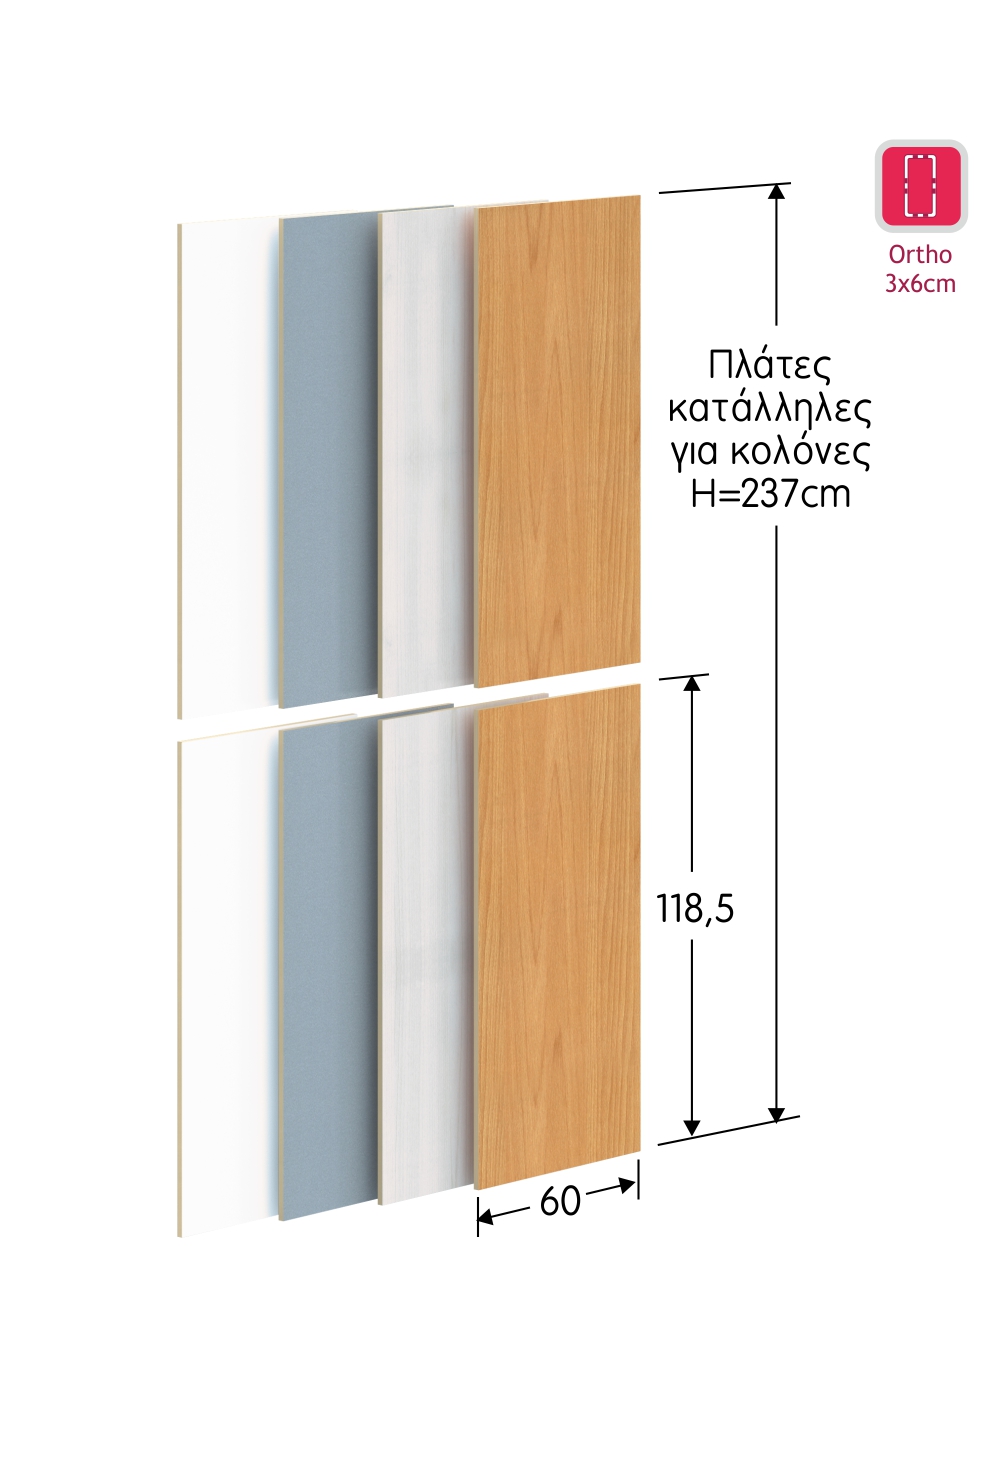 Πλάτες μελαμίνης πάχους 1,8cm (ζεύγος) για κολόνες ύψους 237cm